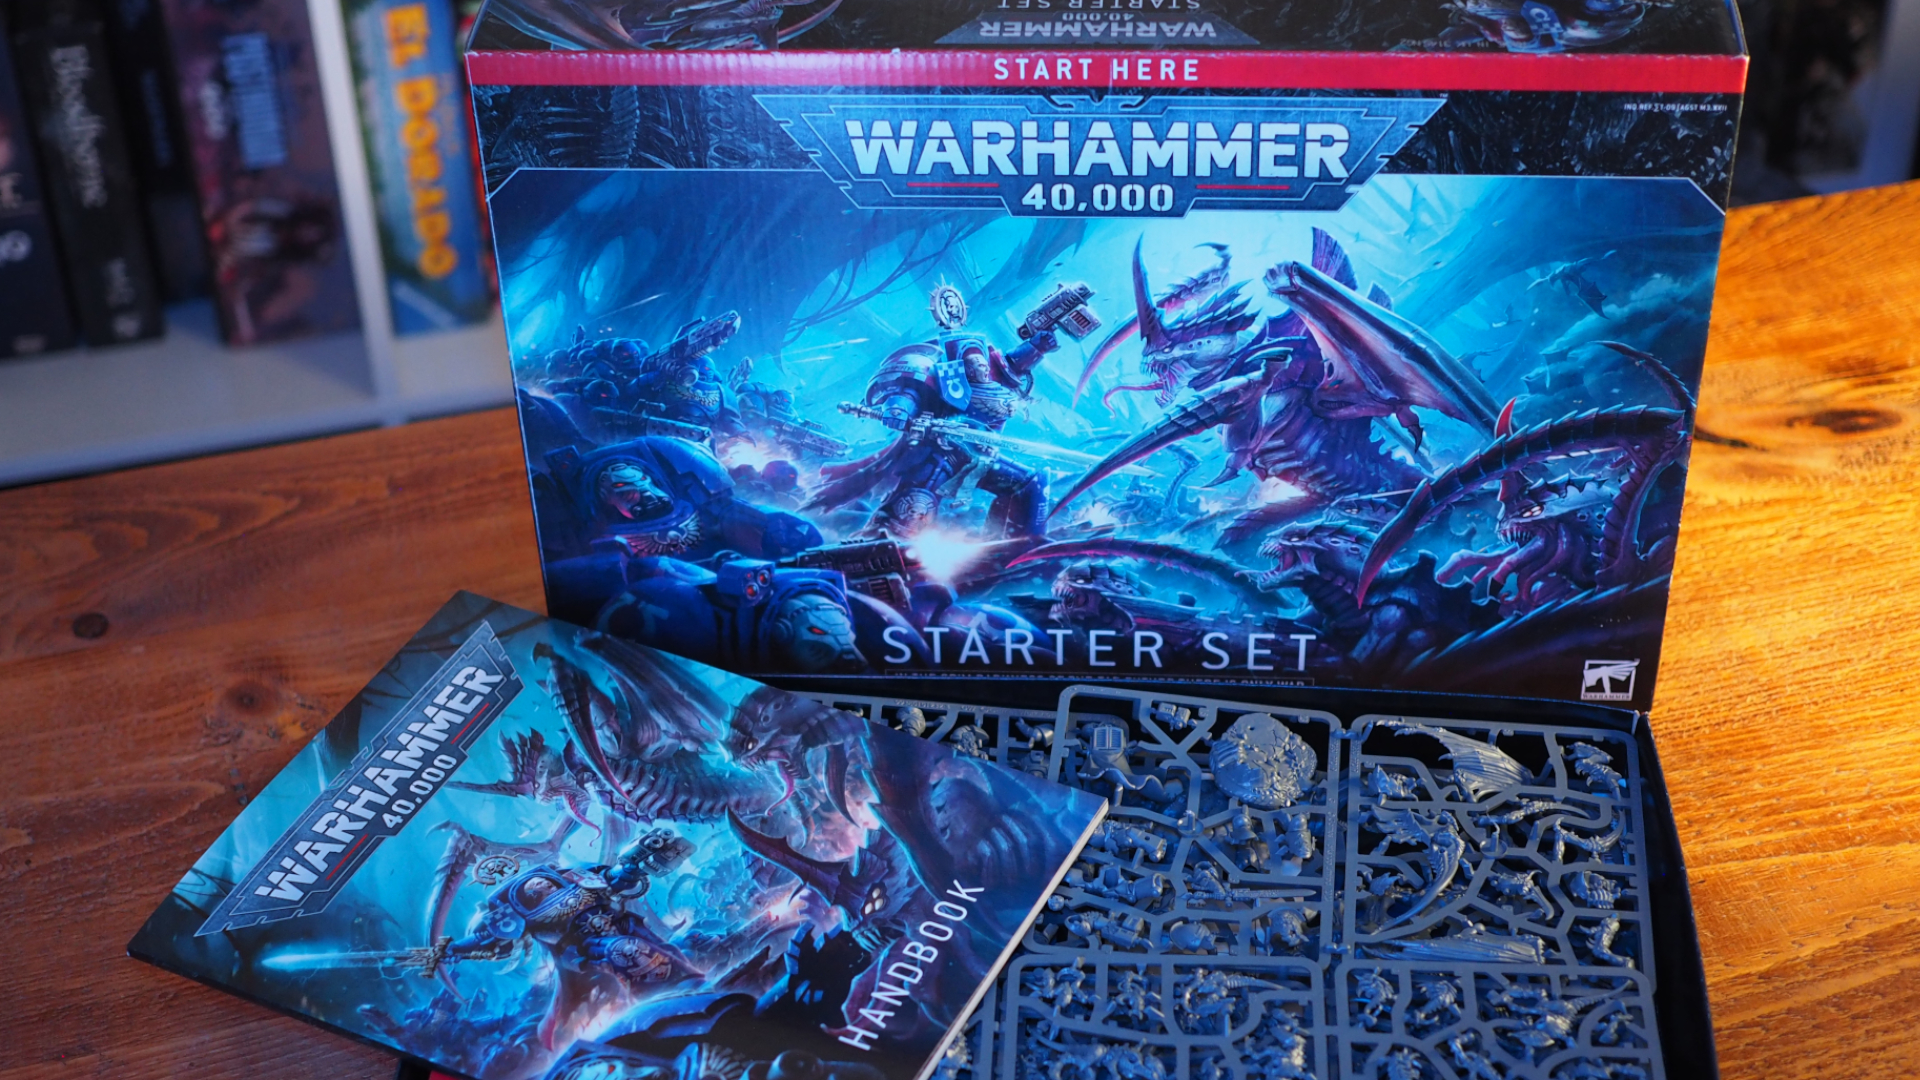 Warhammer 40,000 Starter Set a obsah sedící na dřevěném stole